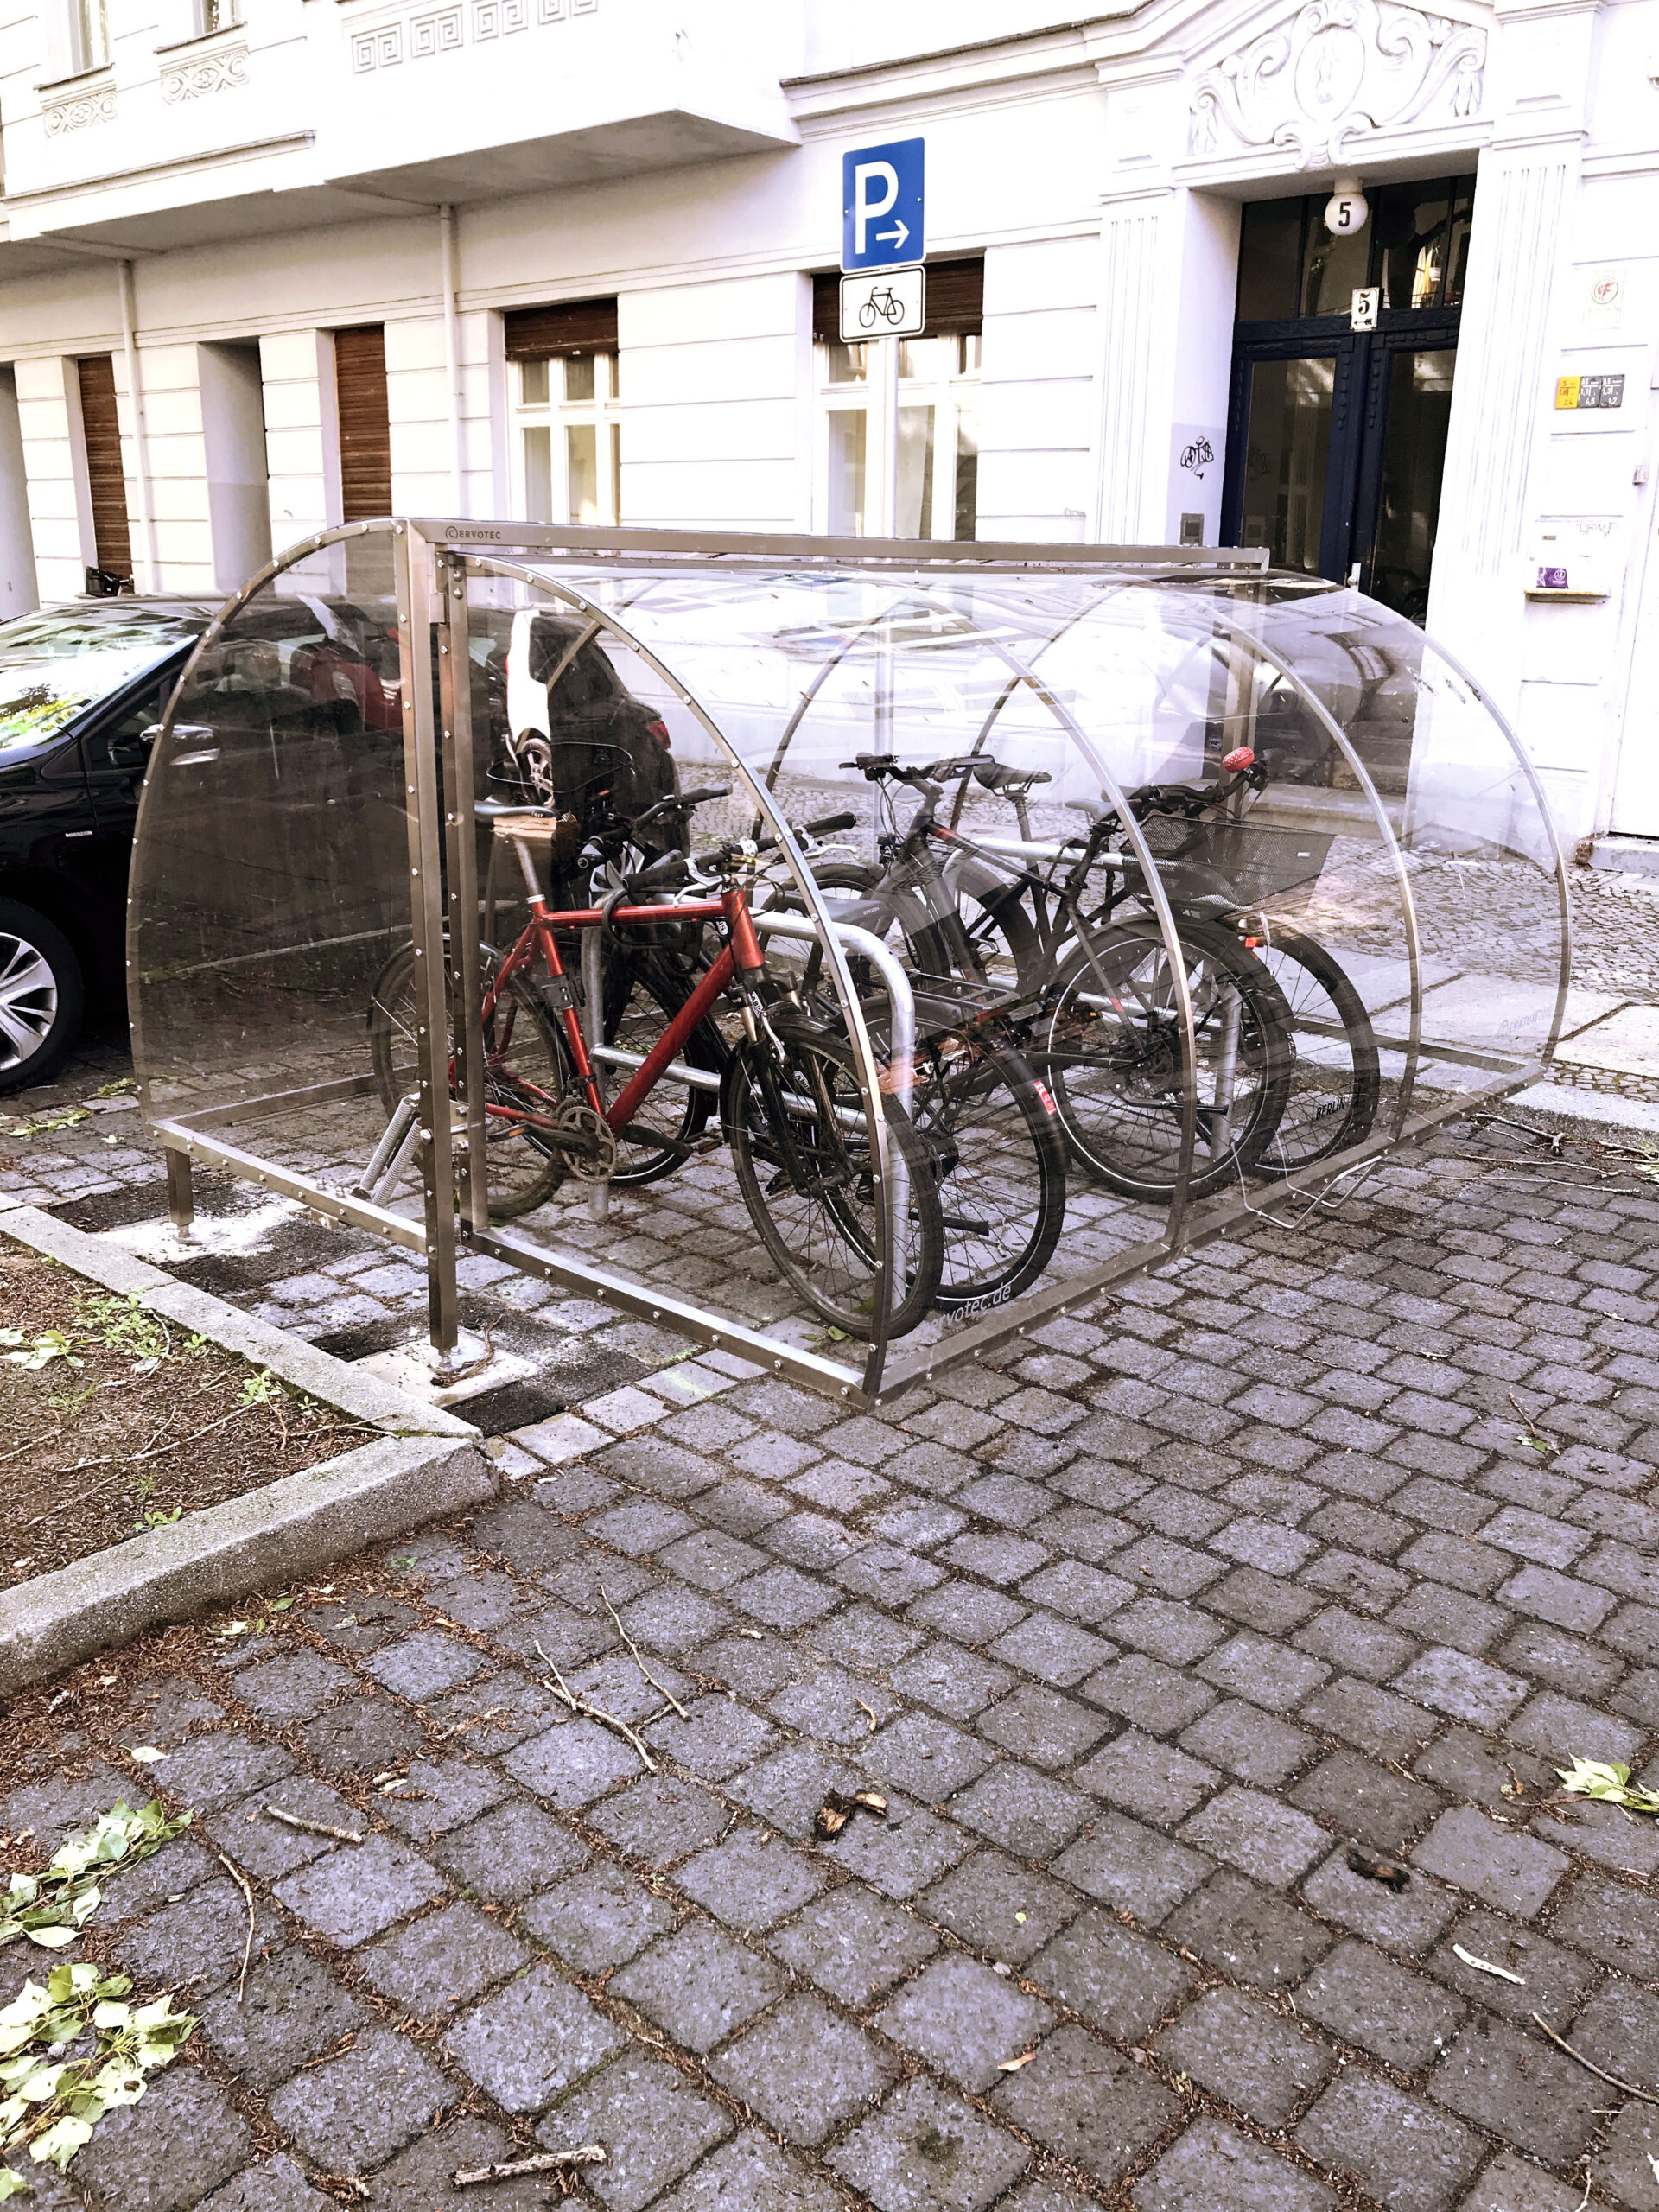 Fahrräder stehen auf einem Fahrradparkplatz in einer transparenten Fahrradgarage.